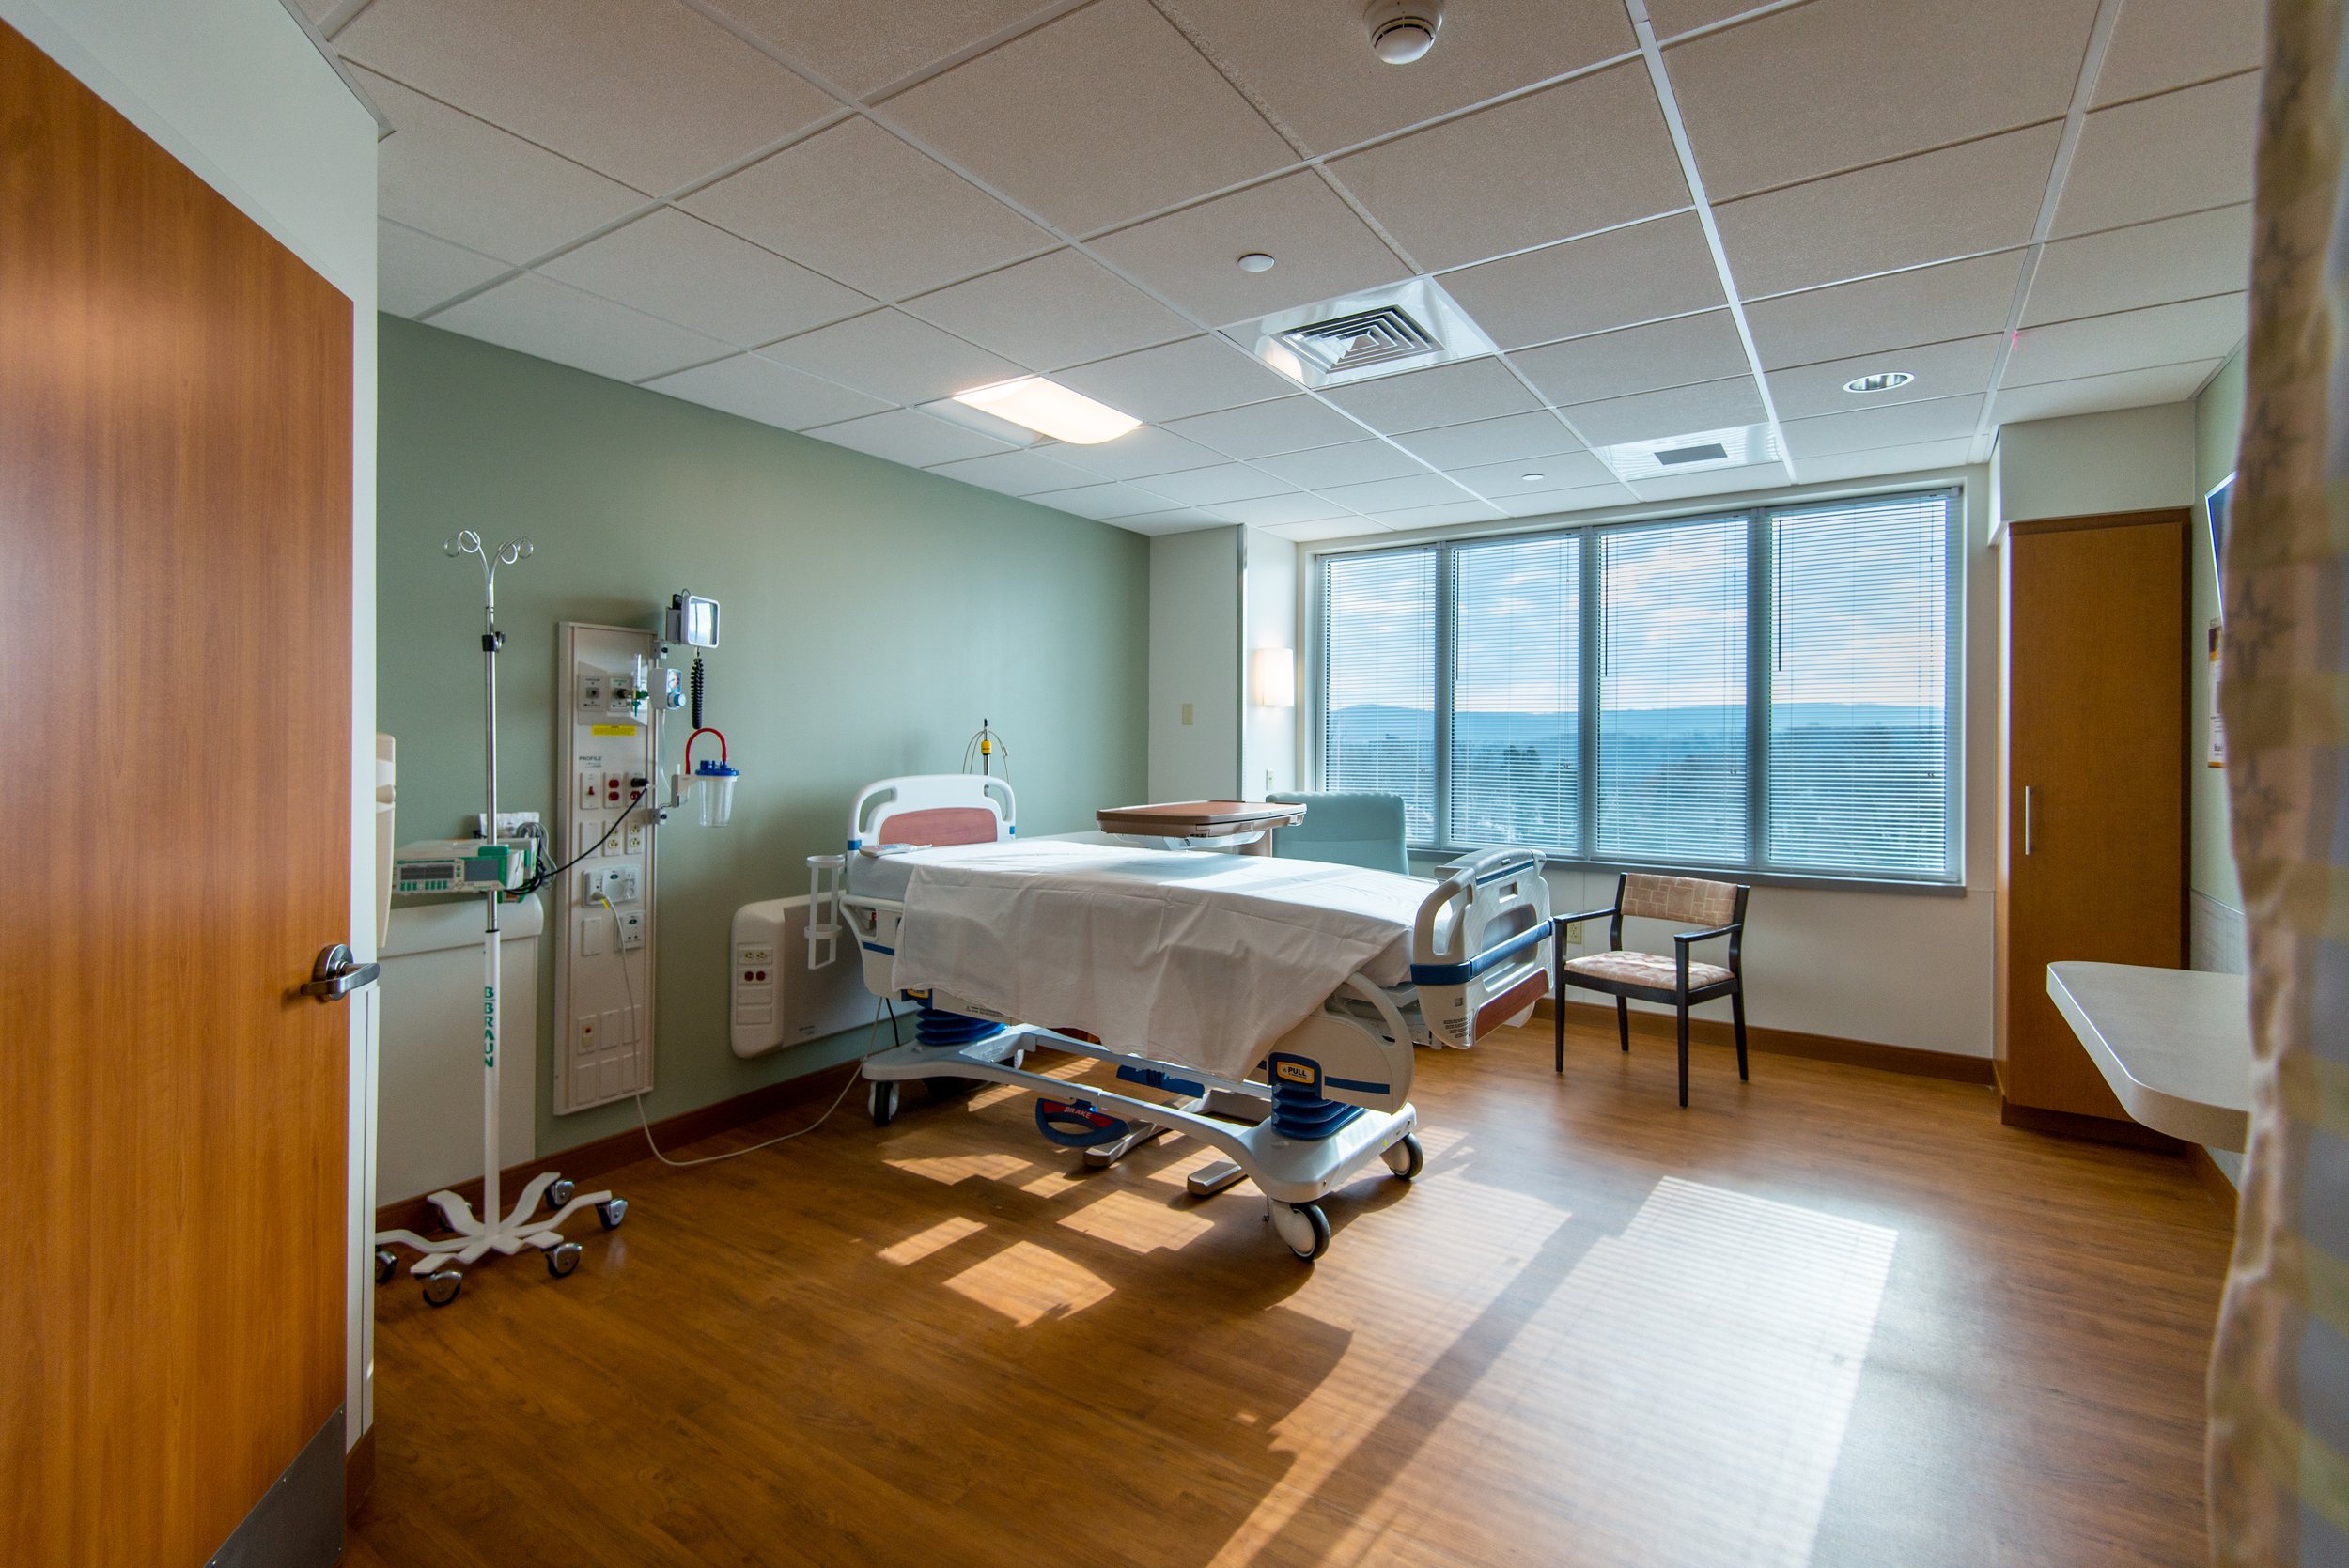 St. Luke's University Healthcare Network New 32-Bed Med-Surg Unit